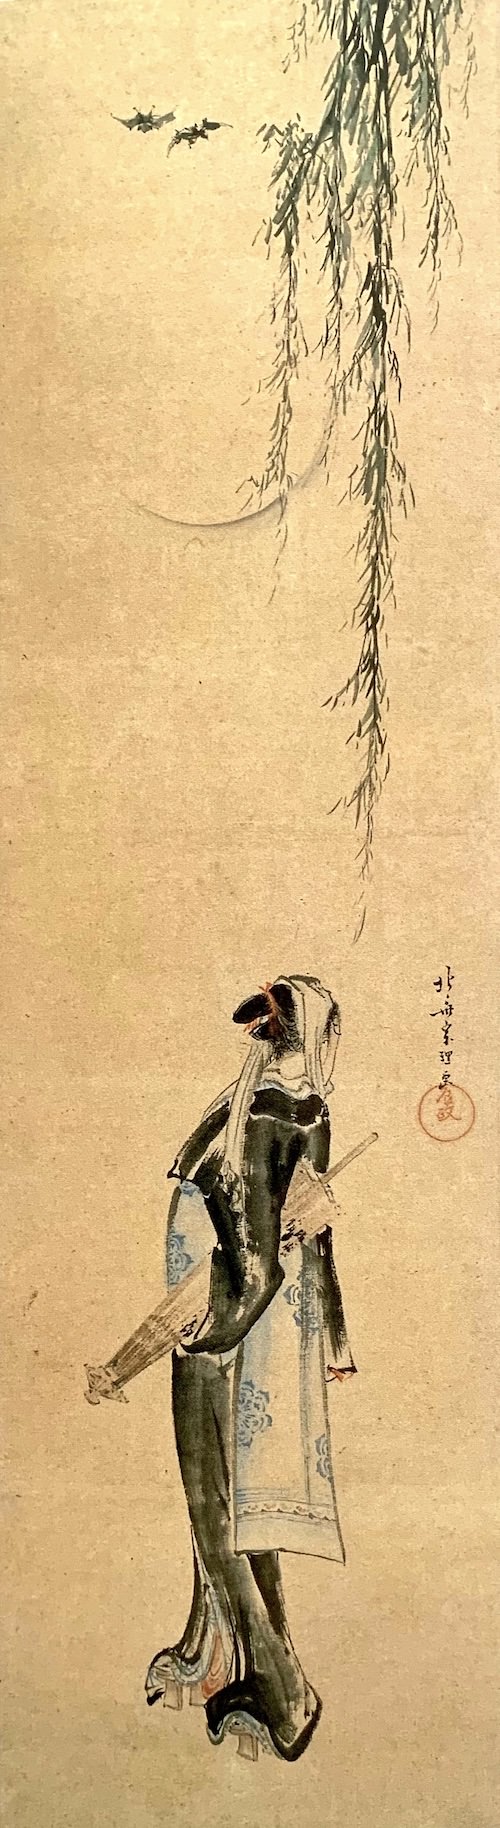 『夜鷹図』（葛飾北斎 画／1796年頃）